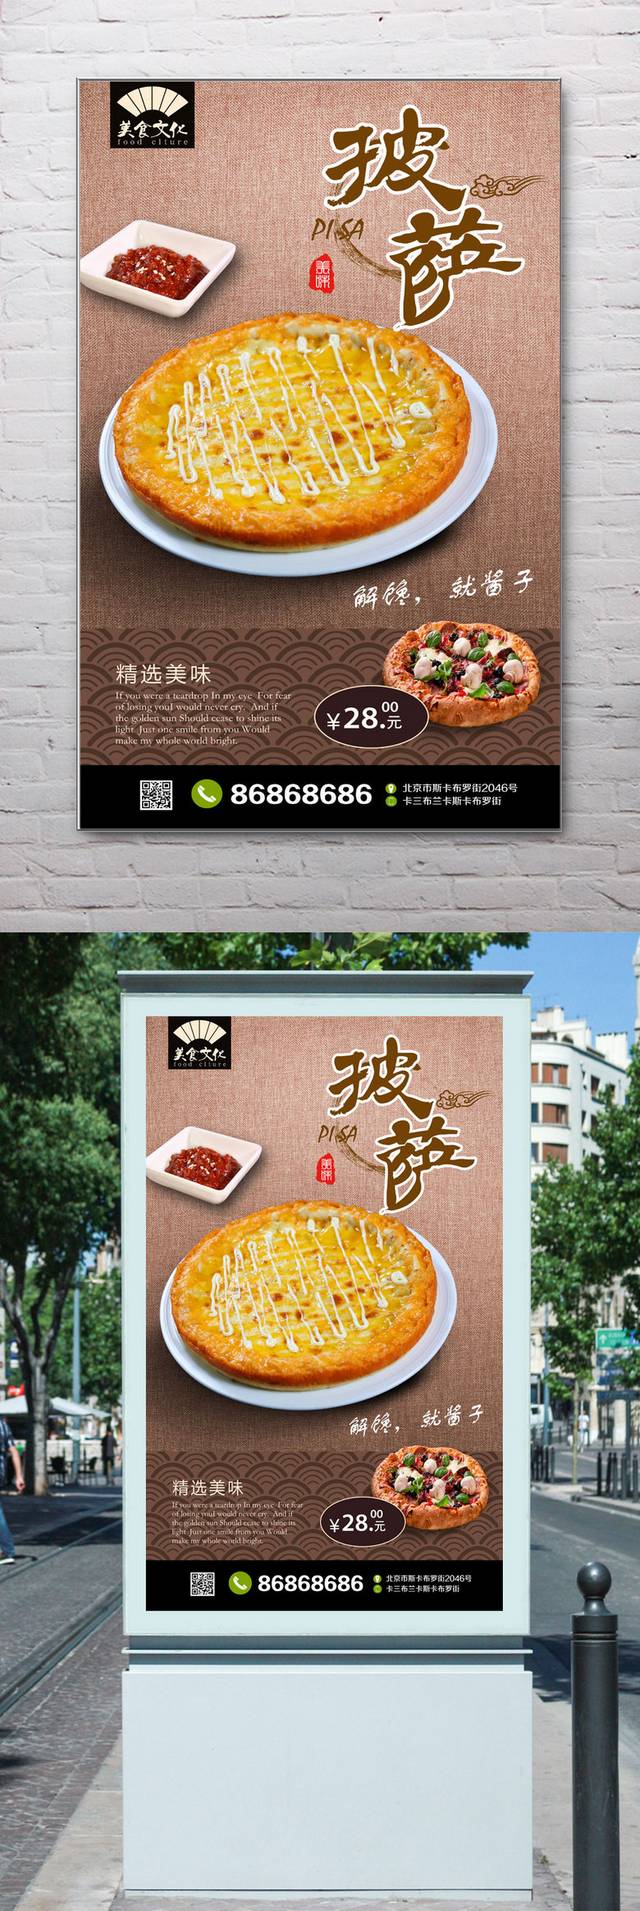 高档披萨宣传海报设计模板